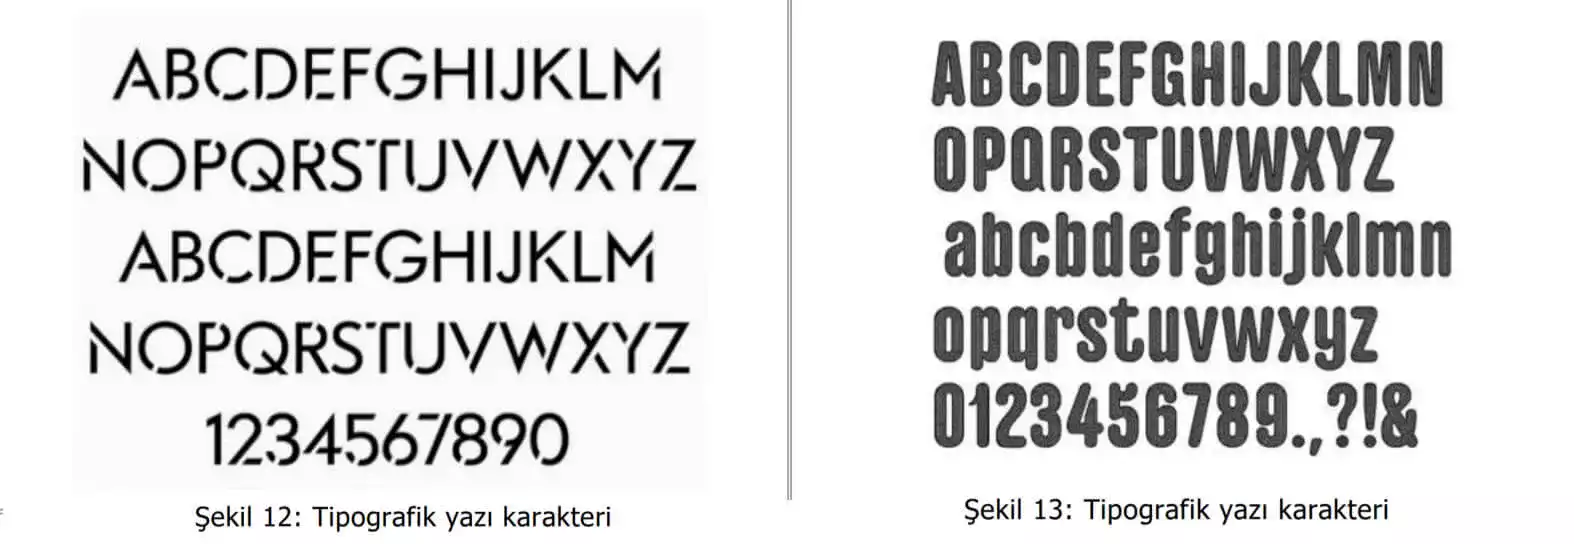 tipografik yazı karakter örnekleri-bakirkoy patent